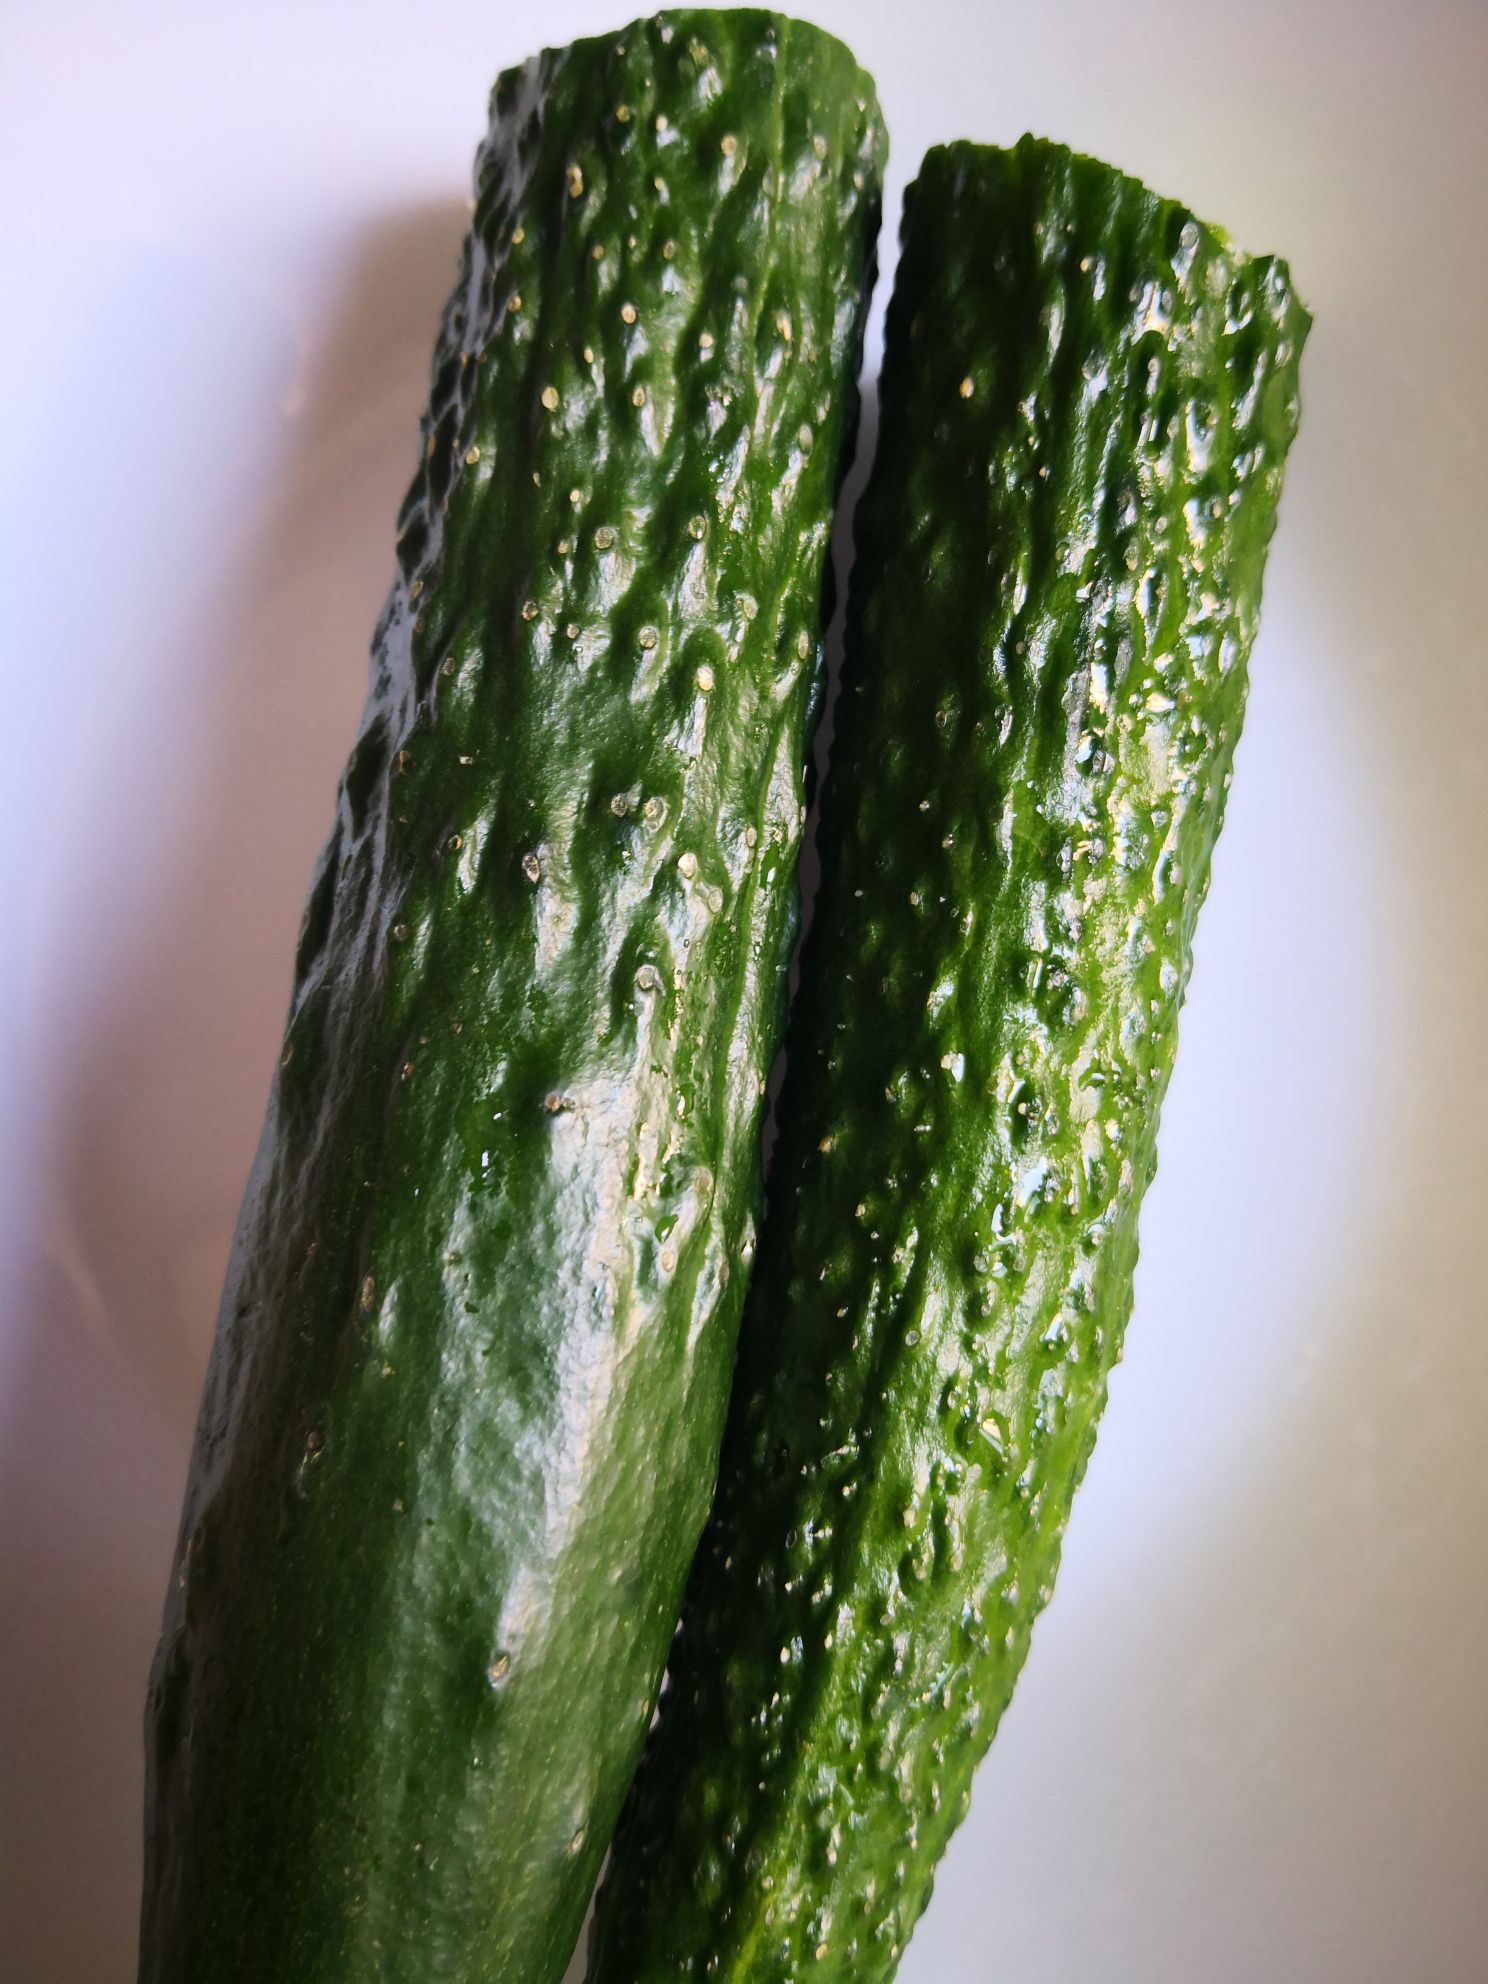 Laba Garlic and Cucumber recipe